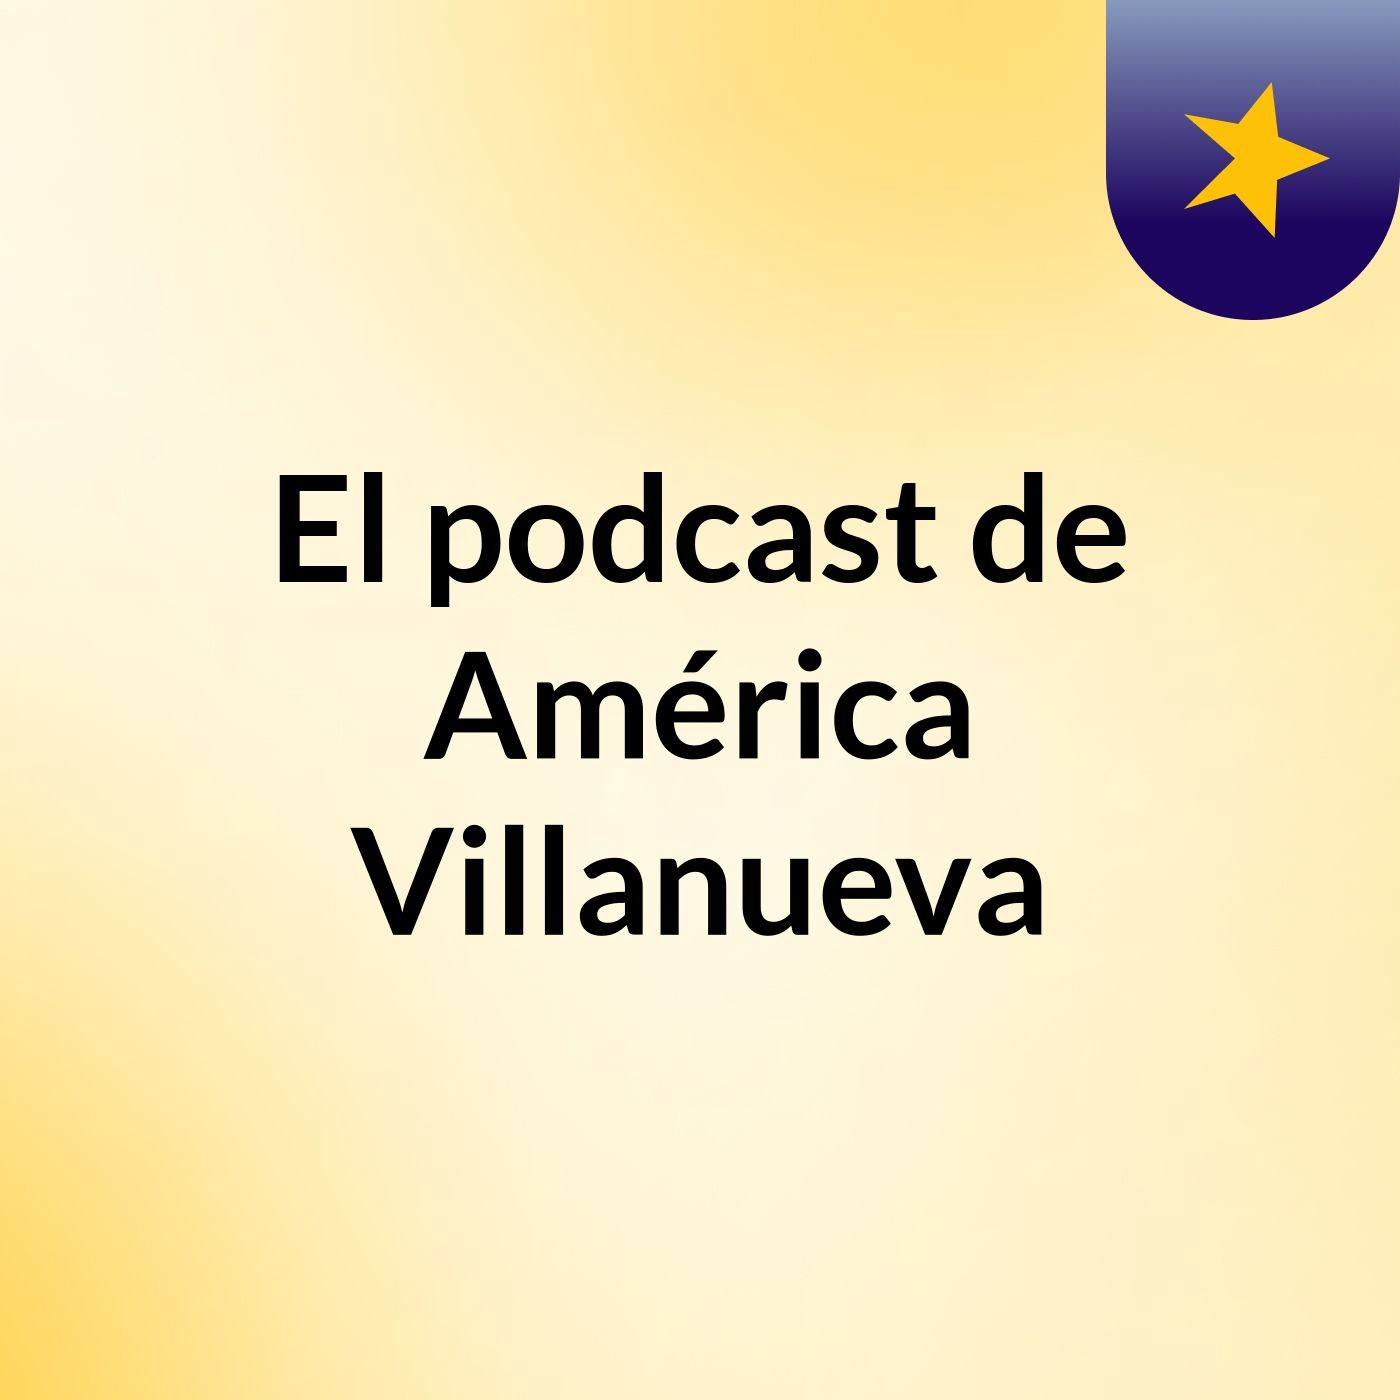 El podcast de América Villanueva